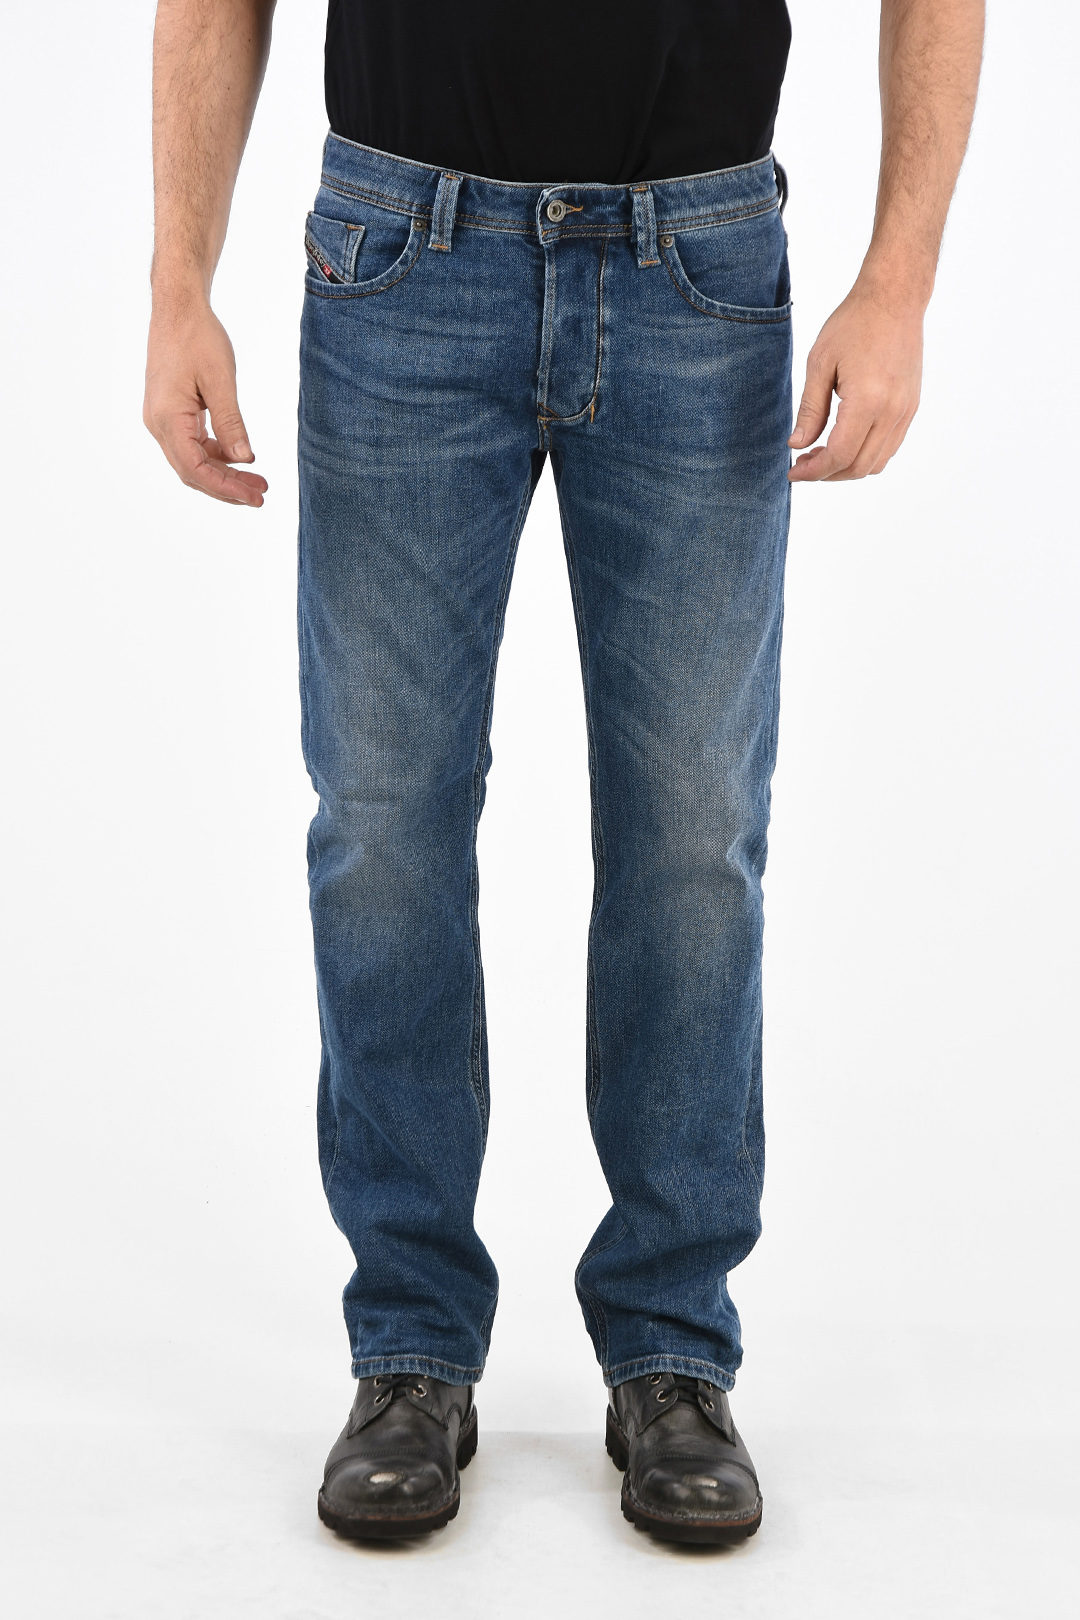 Diesel 21cm Regular Fit LARKEE Jeans L32 men - Glamood Outlet